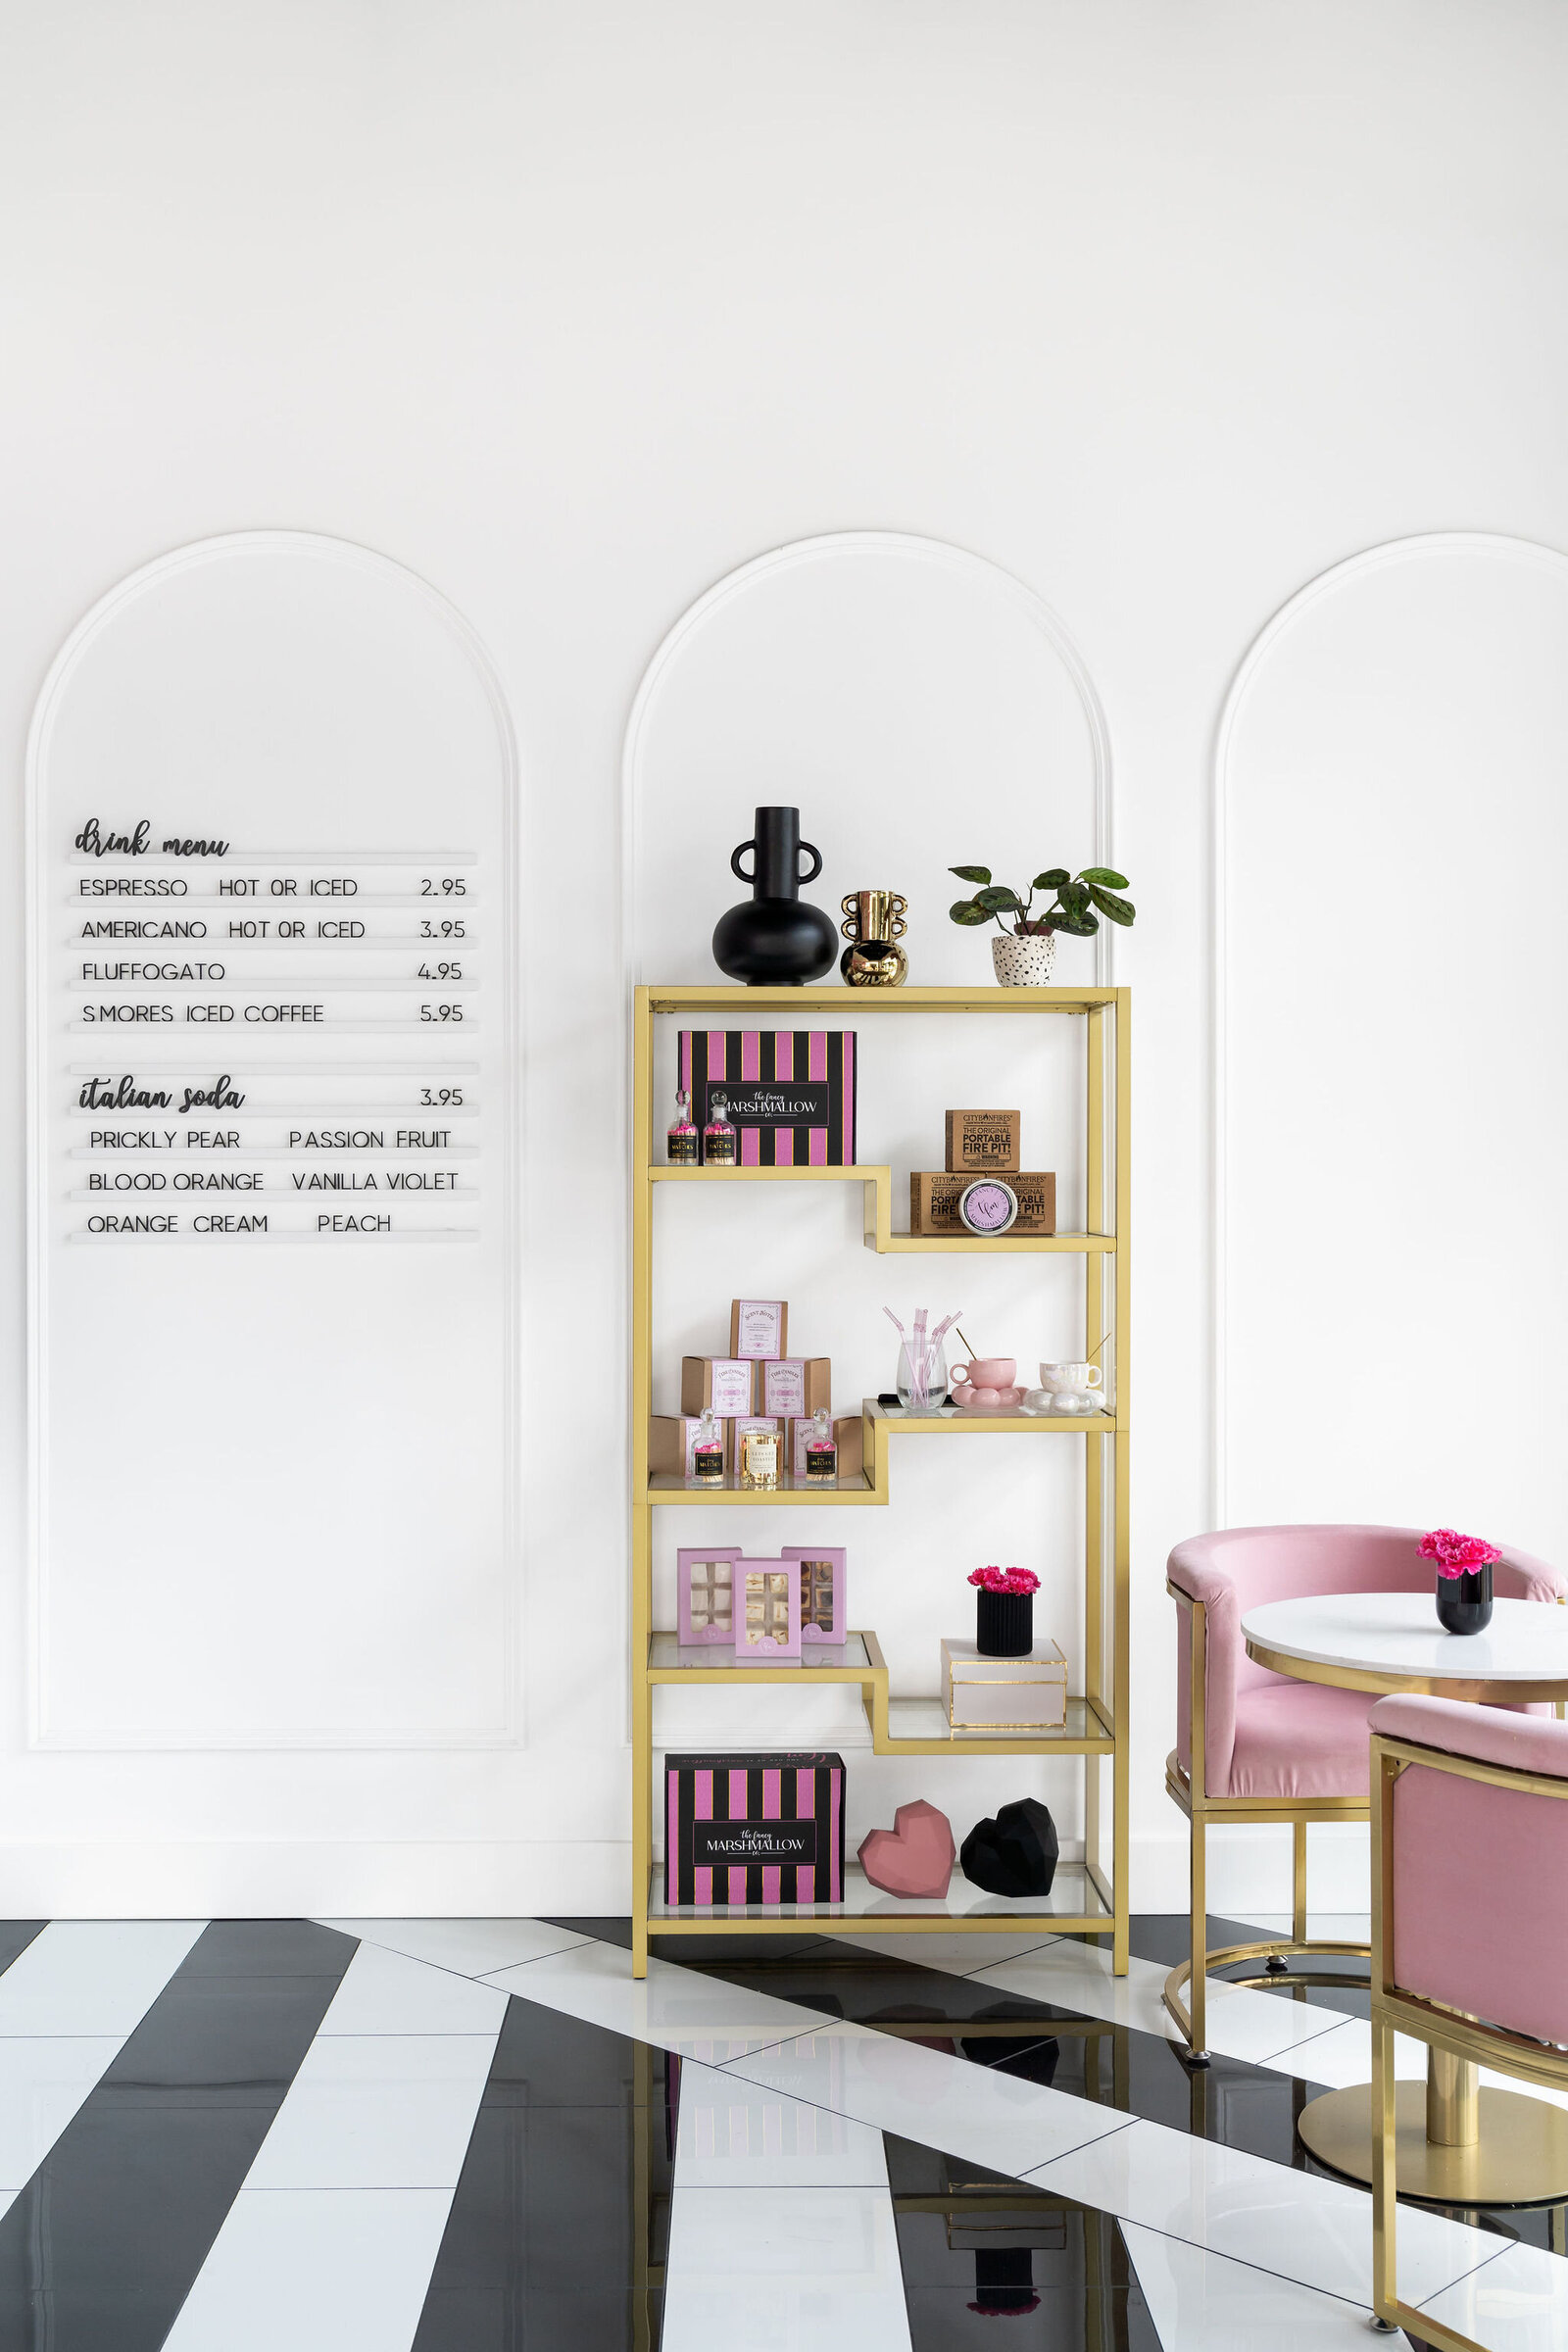 Nuela_Designs_Retail_Interior_Design_Black_and_White_Floors